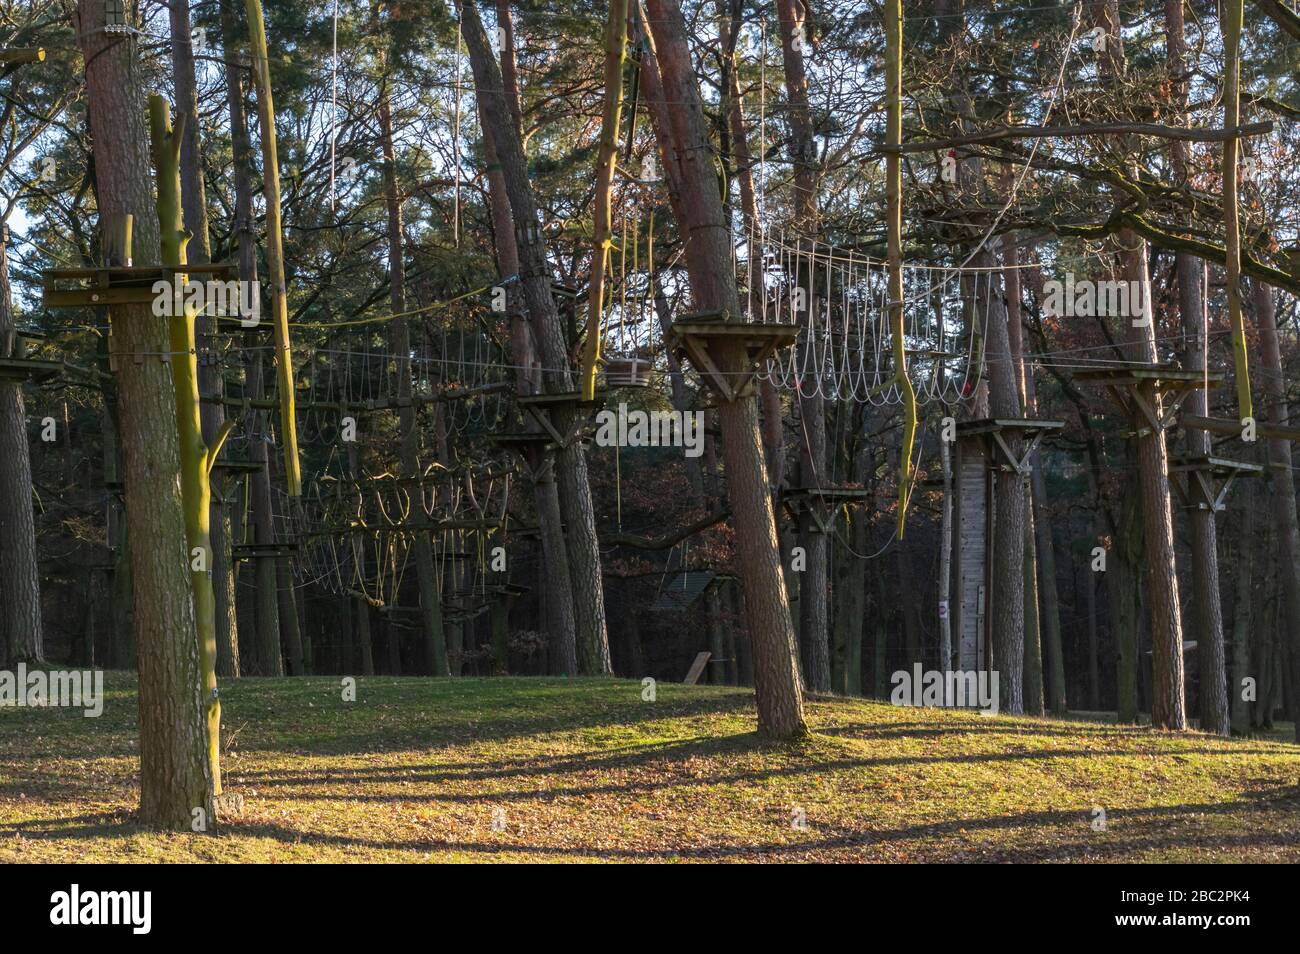 Jardin d'escalade, parcours de cordes dans la forêt avec divers éléments d'escalade et cordes de sécurité entre les arbres individuels et les bancs pour se reposer Banque D'Images